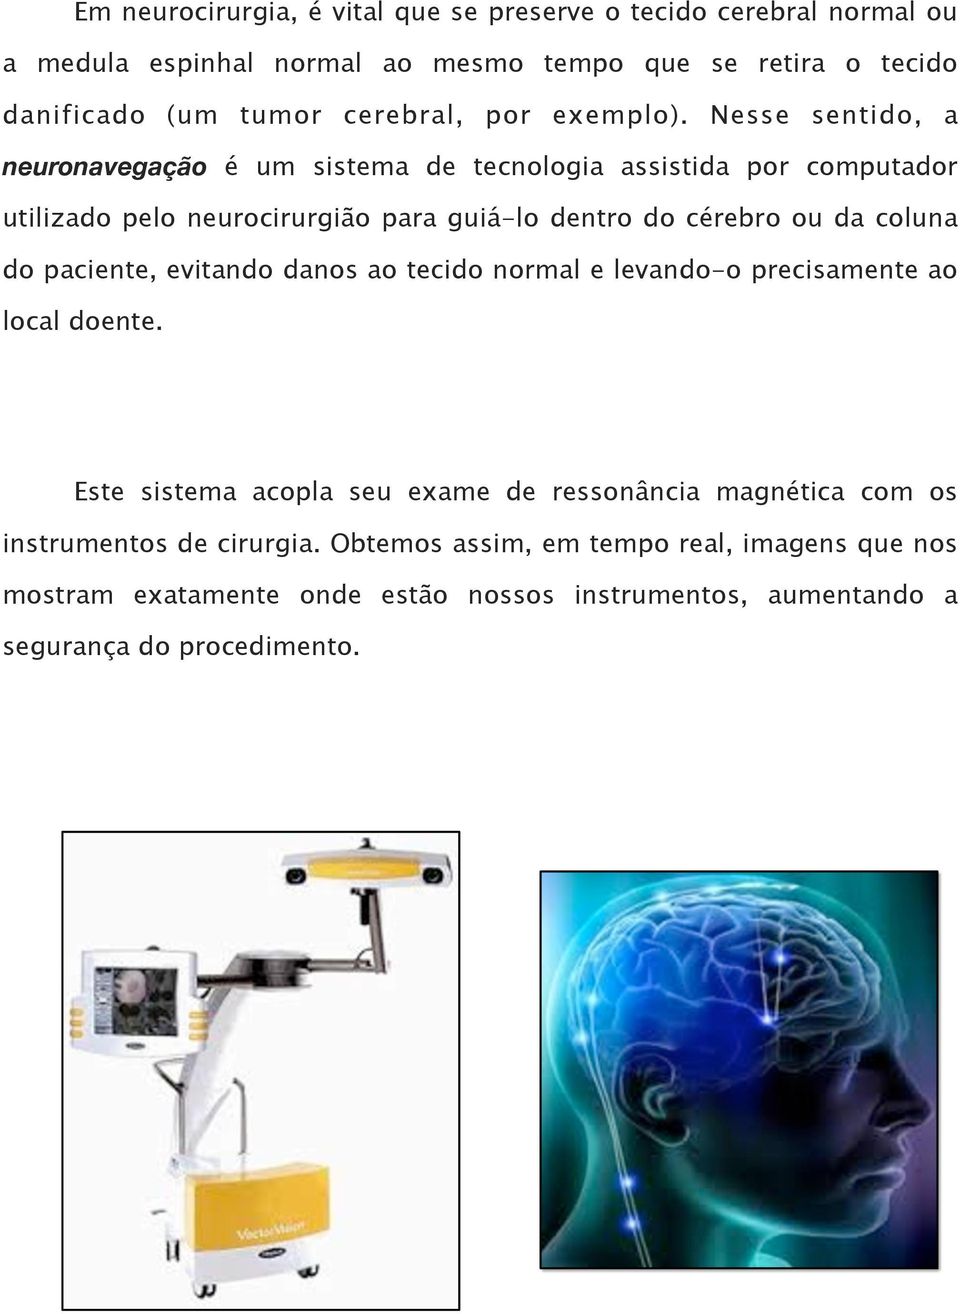 Nesse sentido, a neuronavegação é um sistema de tecnologia assistida por computador utilizado pelo neurocirurgião para guiá-lo dentro do cérebro ou da coluna do